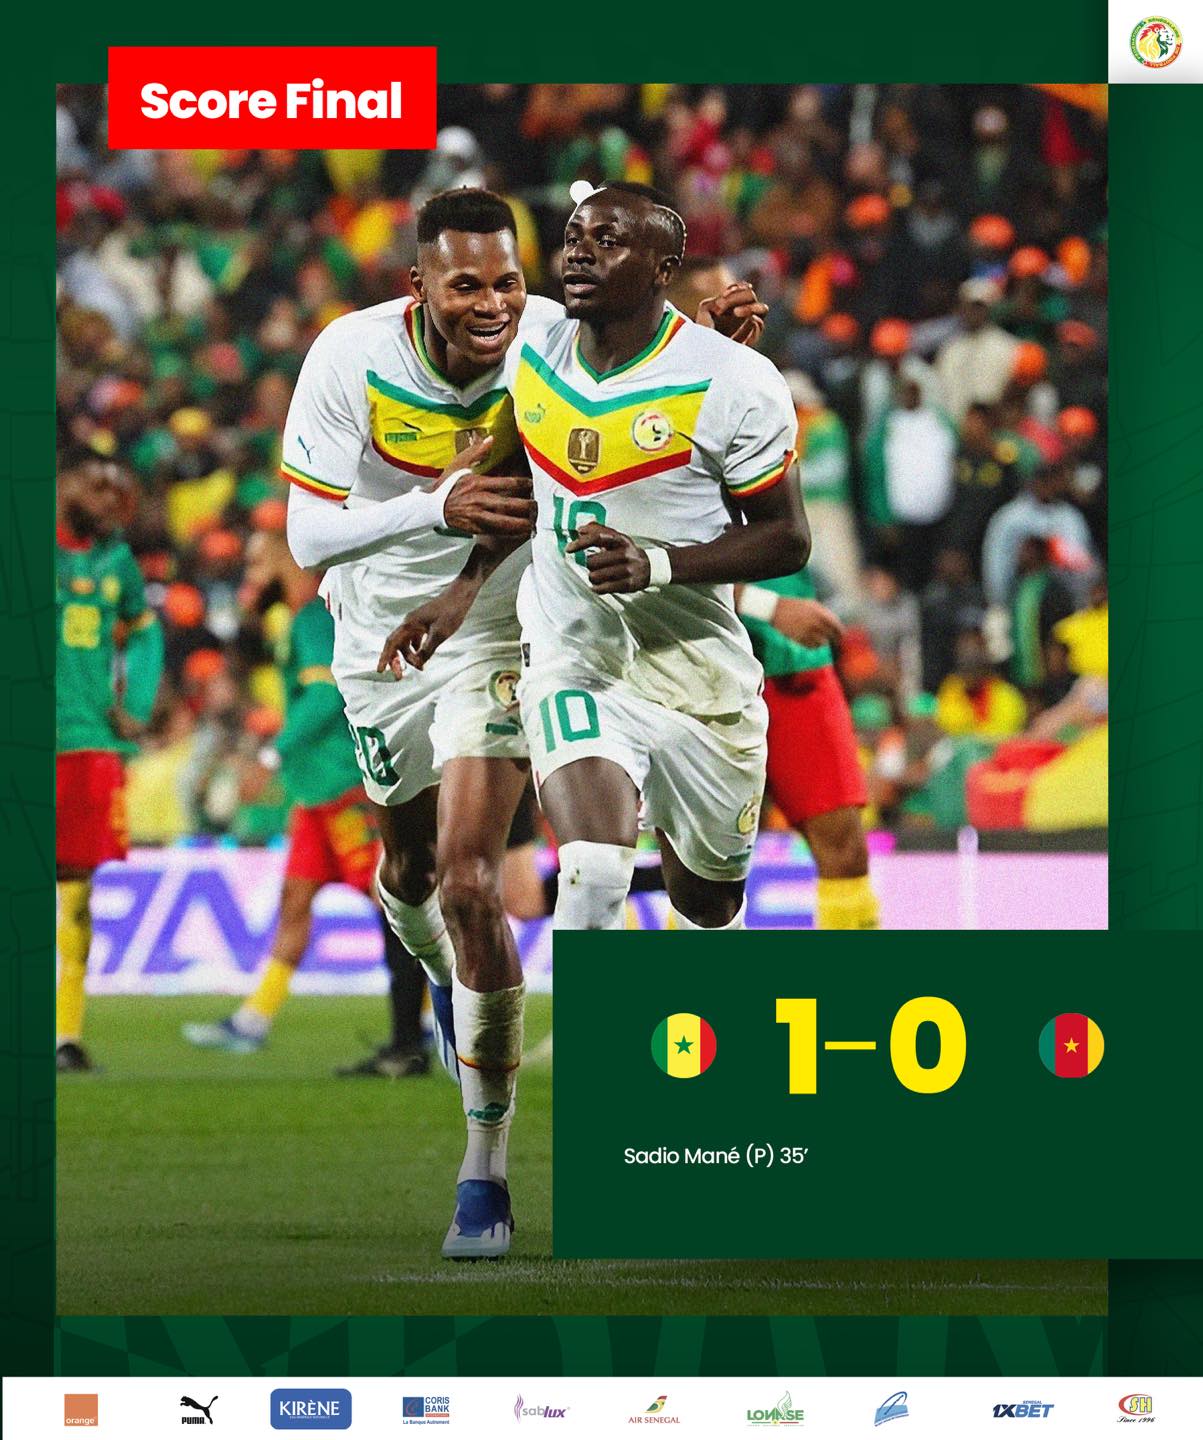 Foot amical:Le Sénégal vainqueur du Cameroun